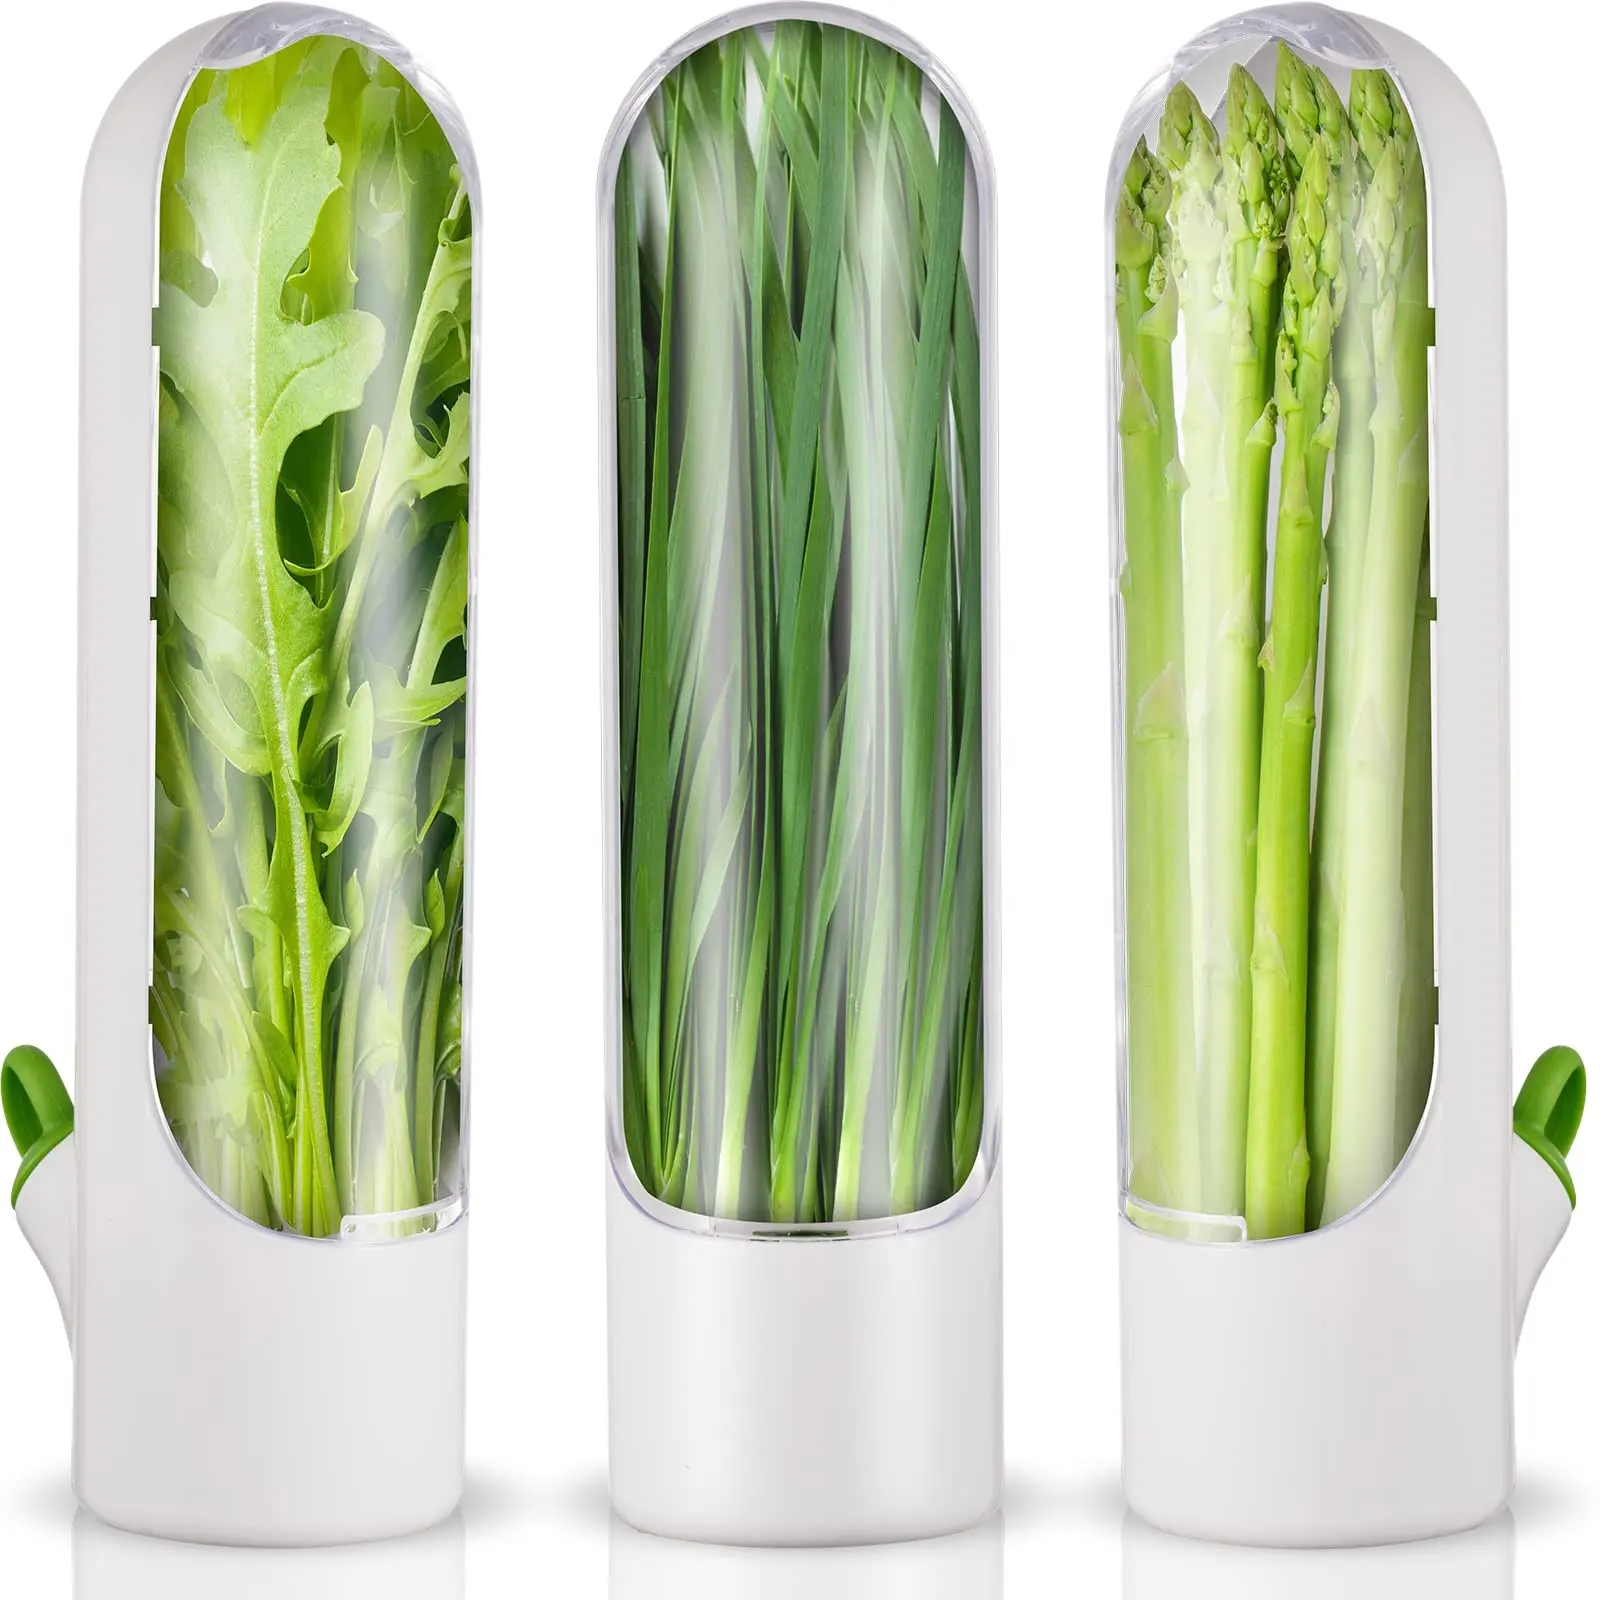 2024 Novas ideias de produtos 300ml Recipiente transparente para armazenar sabores de ervas e especiarias, protetor de frescor para uso em geladeira